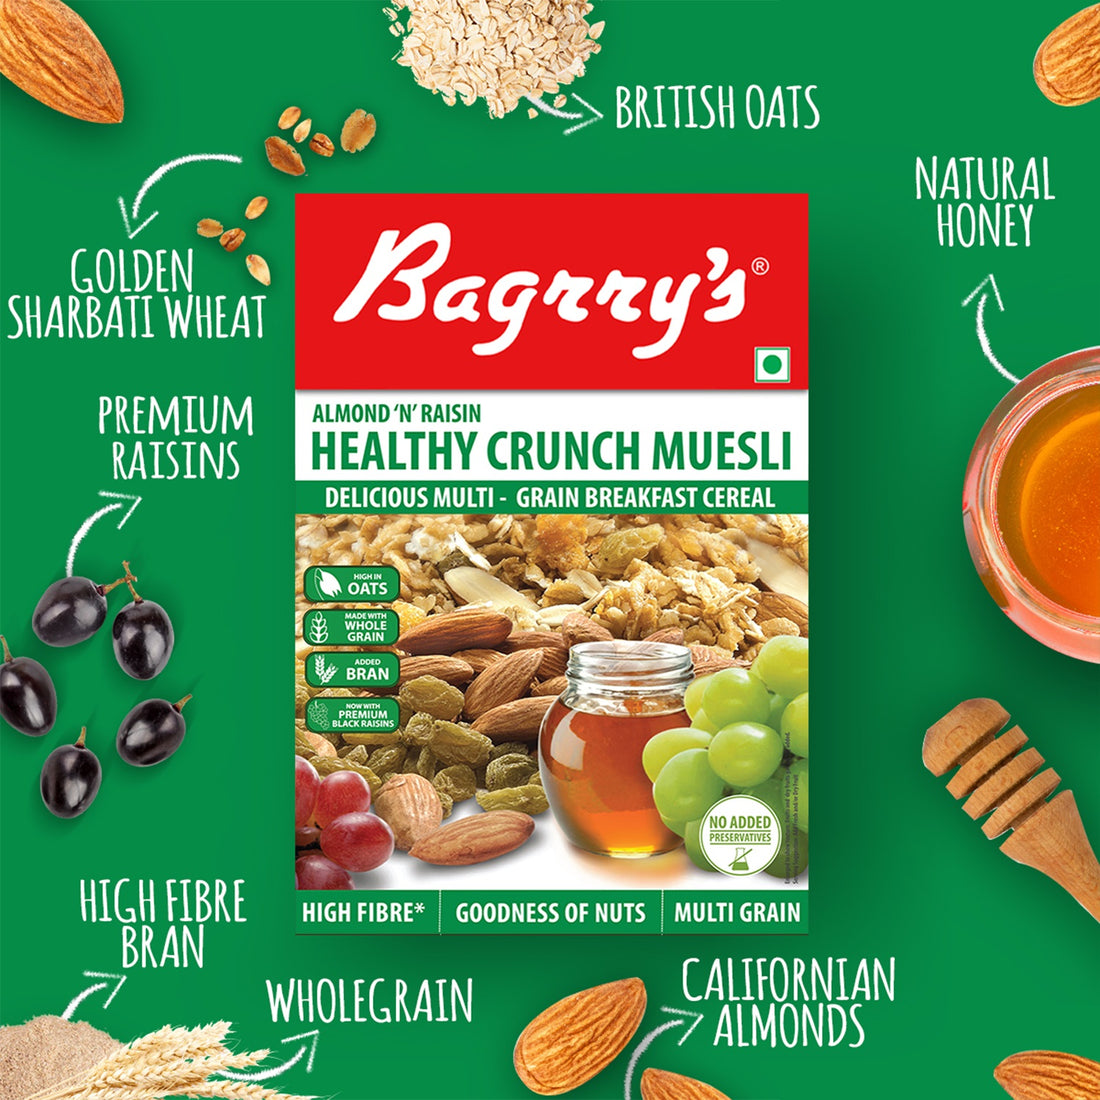 Healthy Crunch Muesli - Almonds, Raisins, 400g